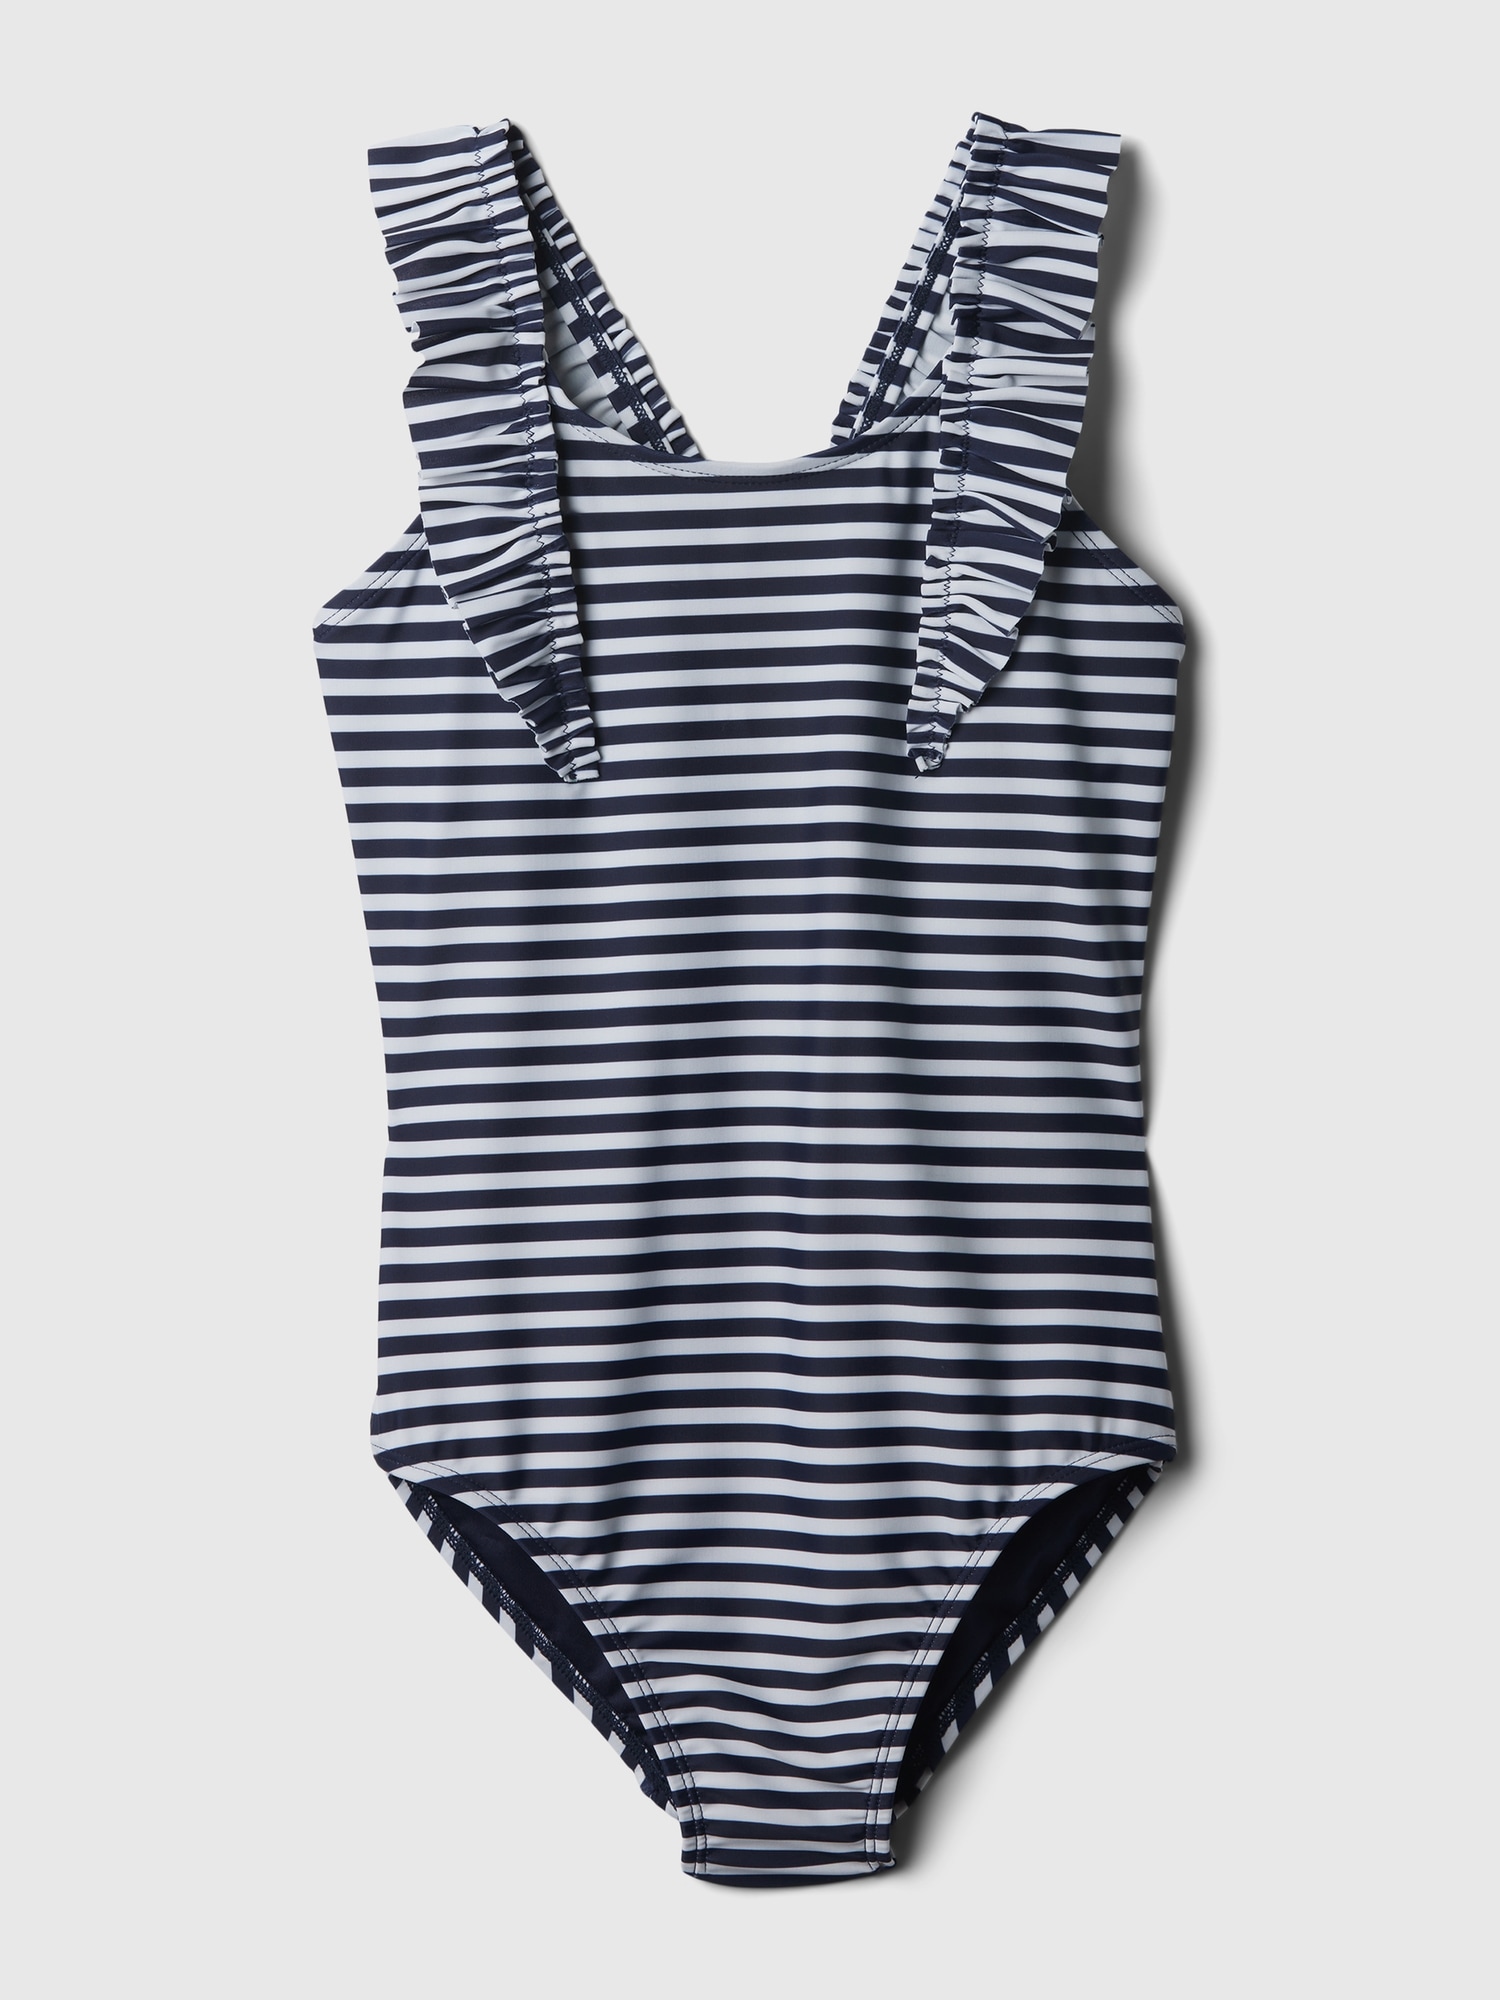 Kids Boys Girls UPF 50+ UV Protection Swimwear Navy White Stripe